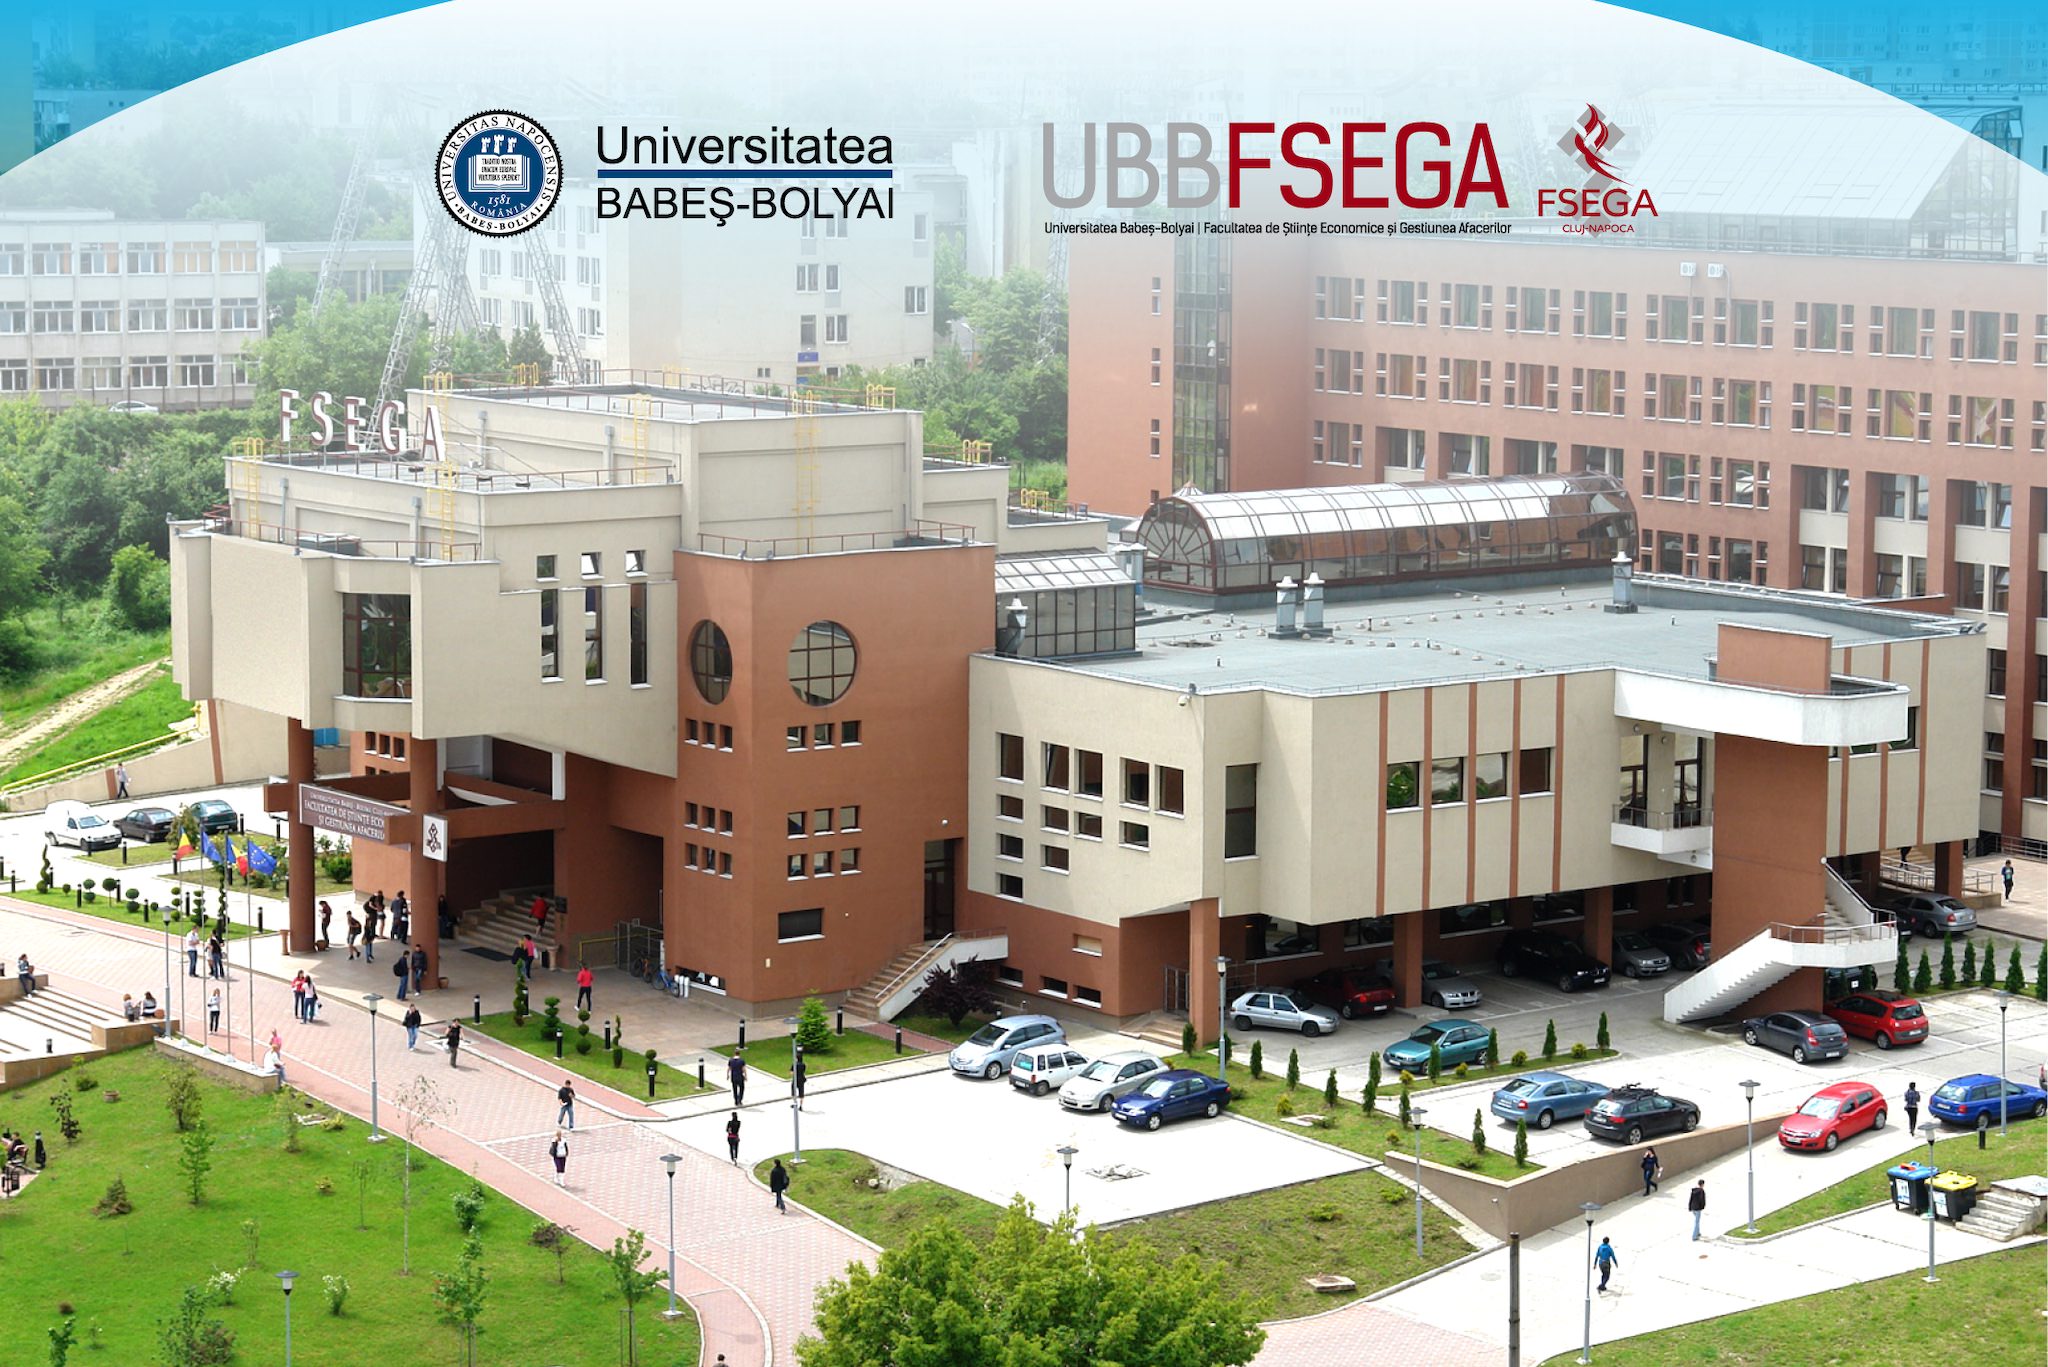 FSEGA - Facultatea de Stiinte Economice si Gestiunea Afacerilor, Universitatea Babes Bolyai, Cluj-Napoca